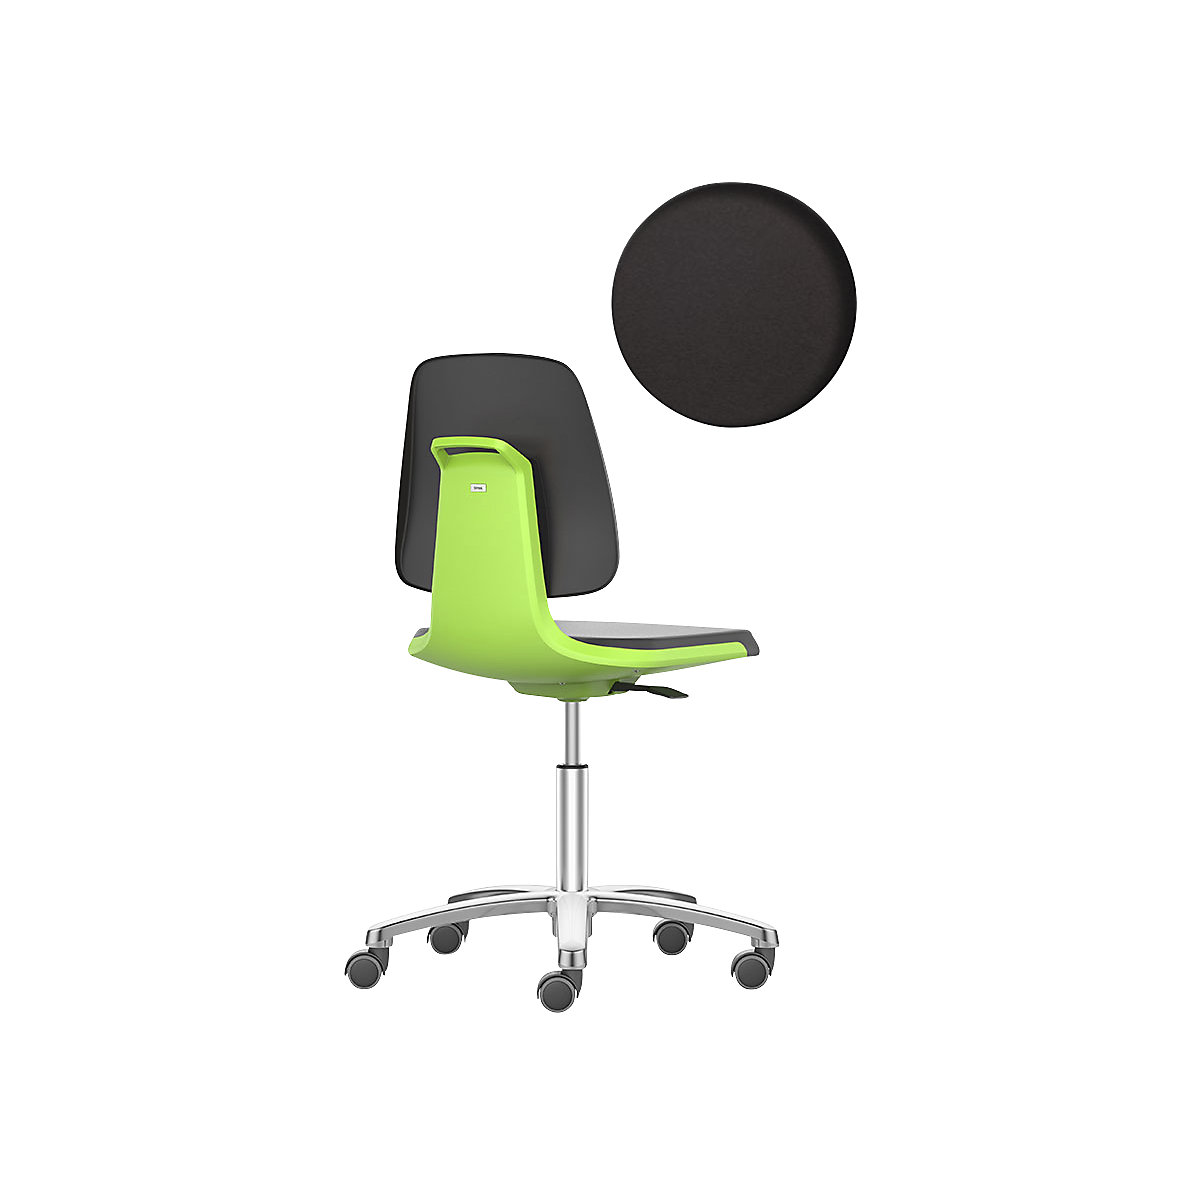 Pracovná otočná stolička LABSIT – bimos, päť nôh s kolieskami, sedadlo z PU peny, zelená-32